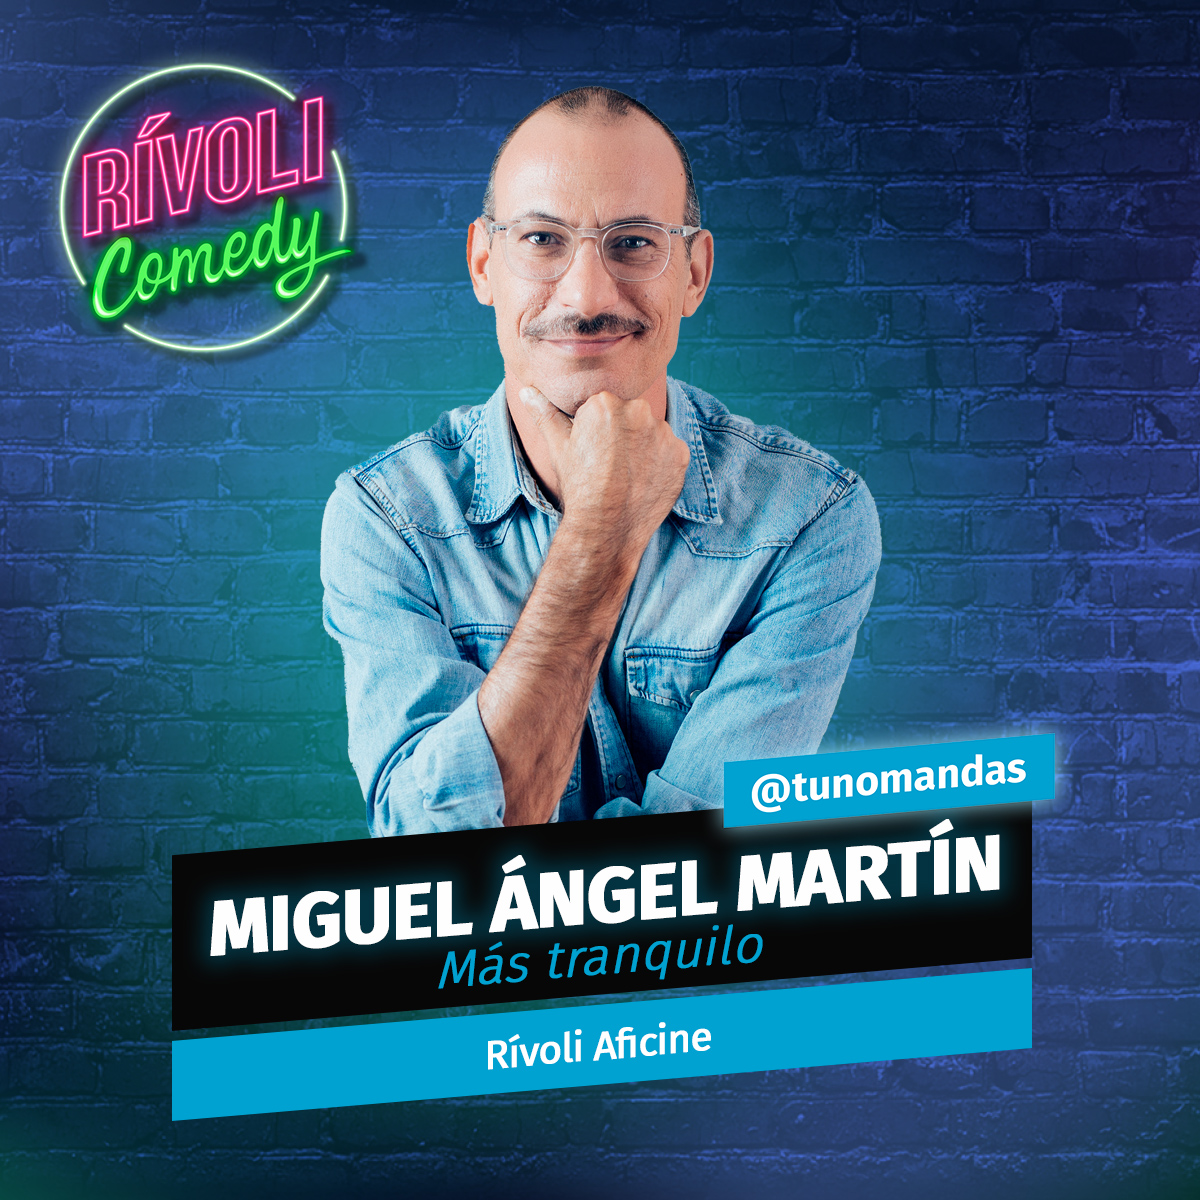 Miguel Ángel Martín @tunomandas | Más tranquilo · 12 de mayo · Palma de Mallorca (Rívoli Comedy)